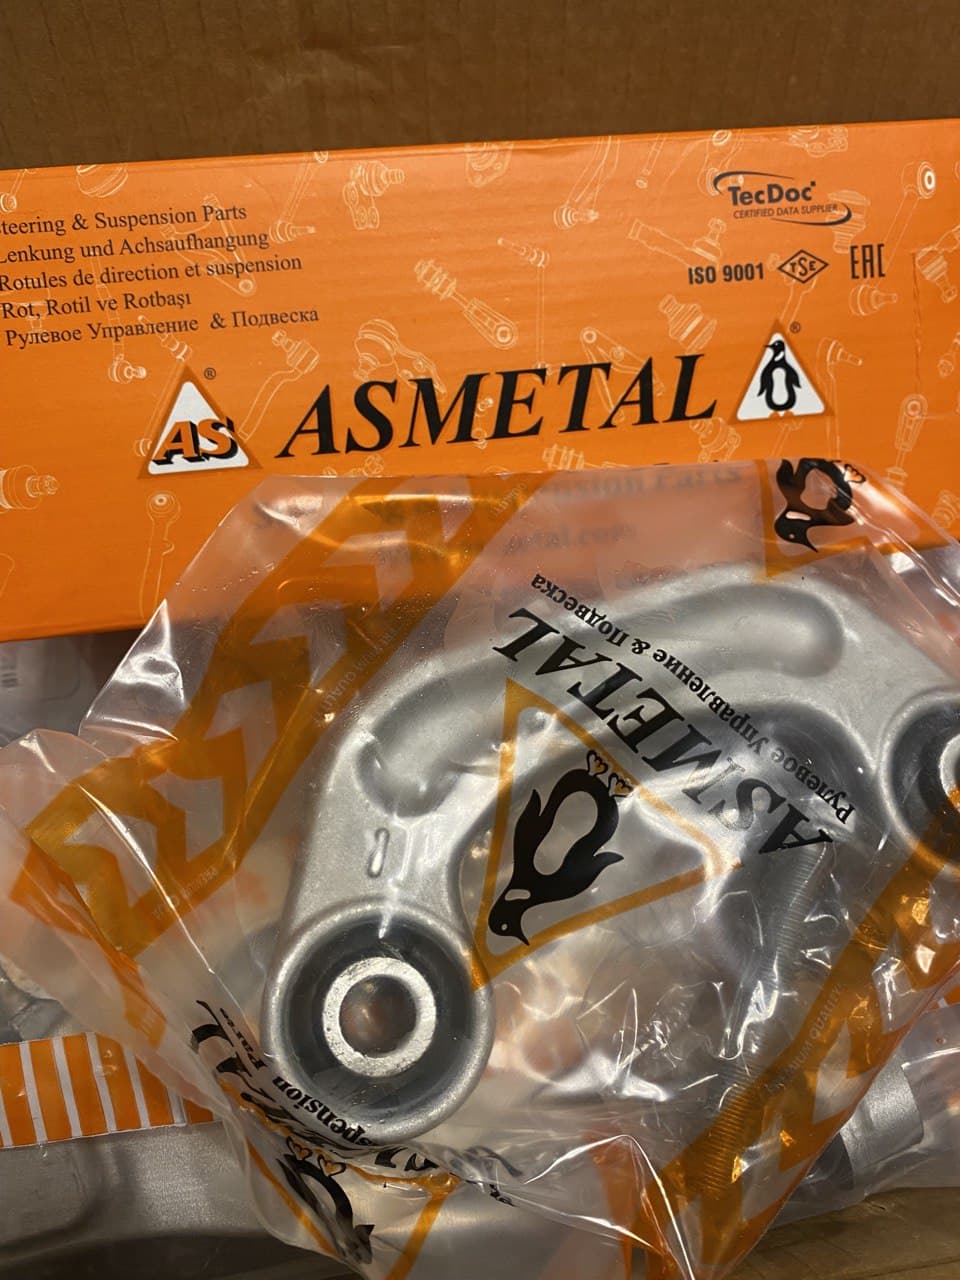   Asmetal